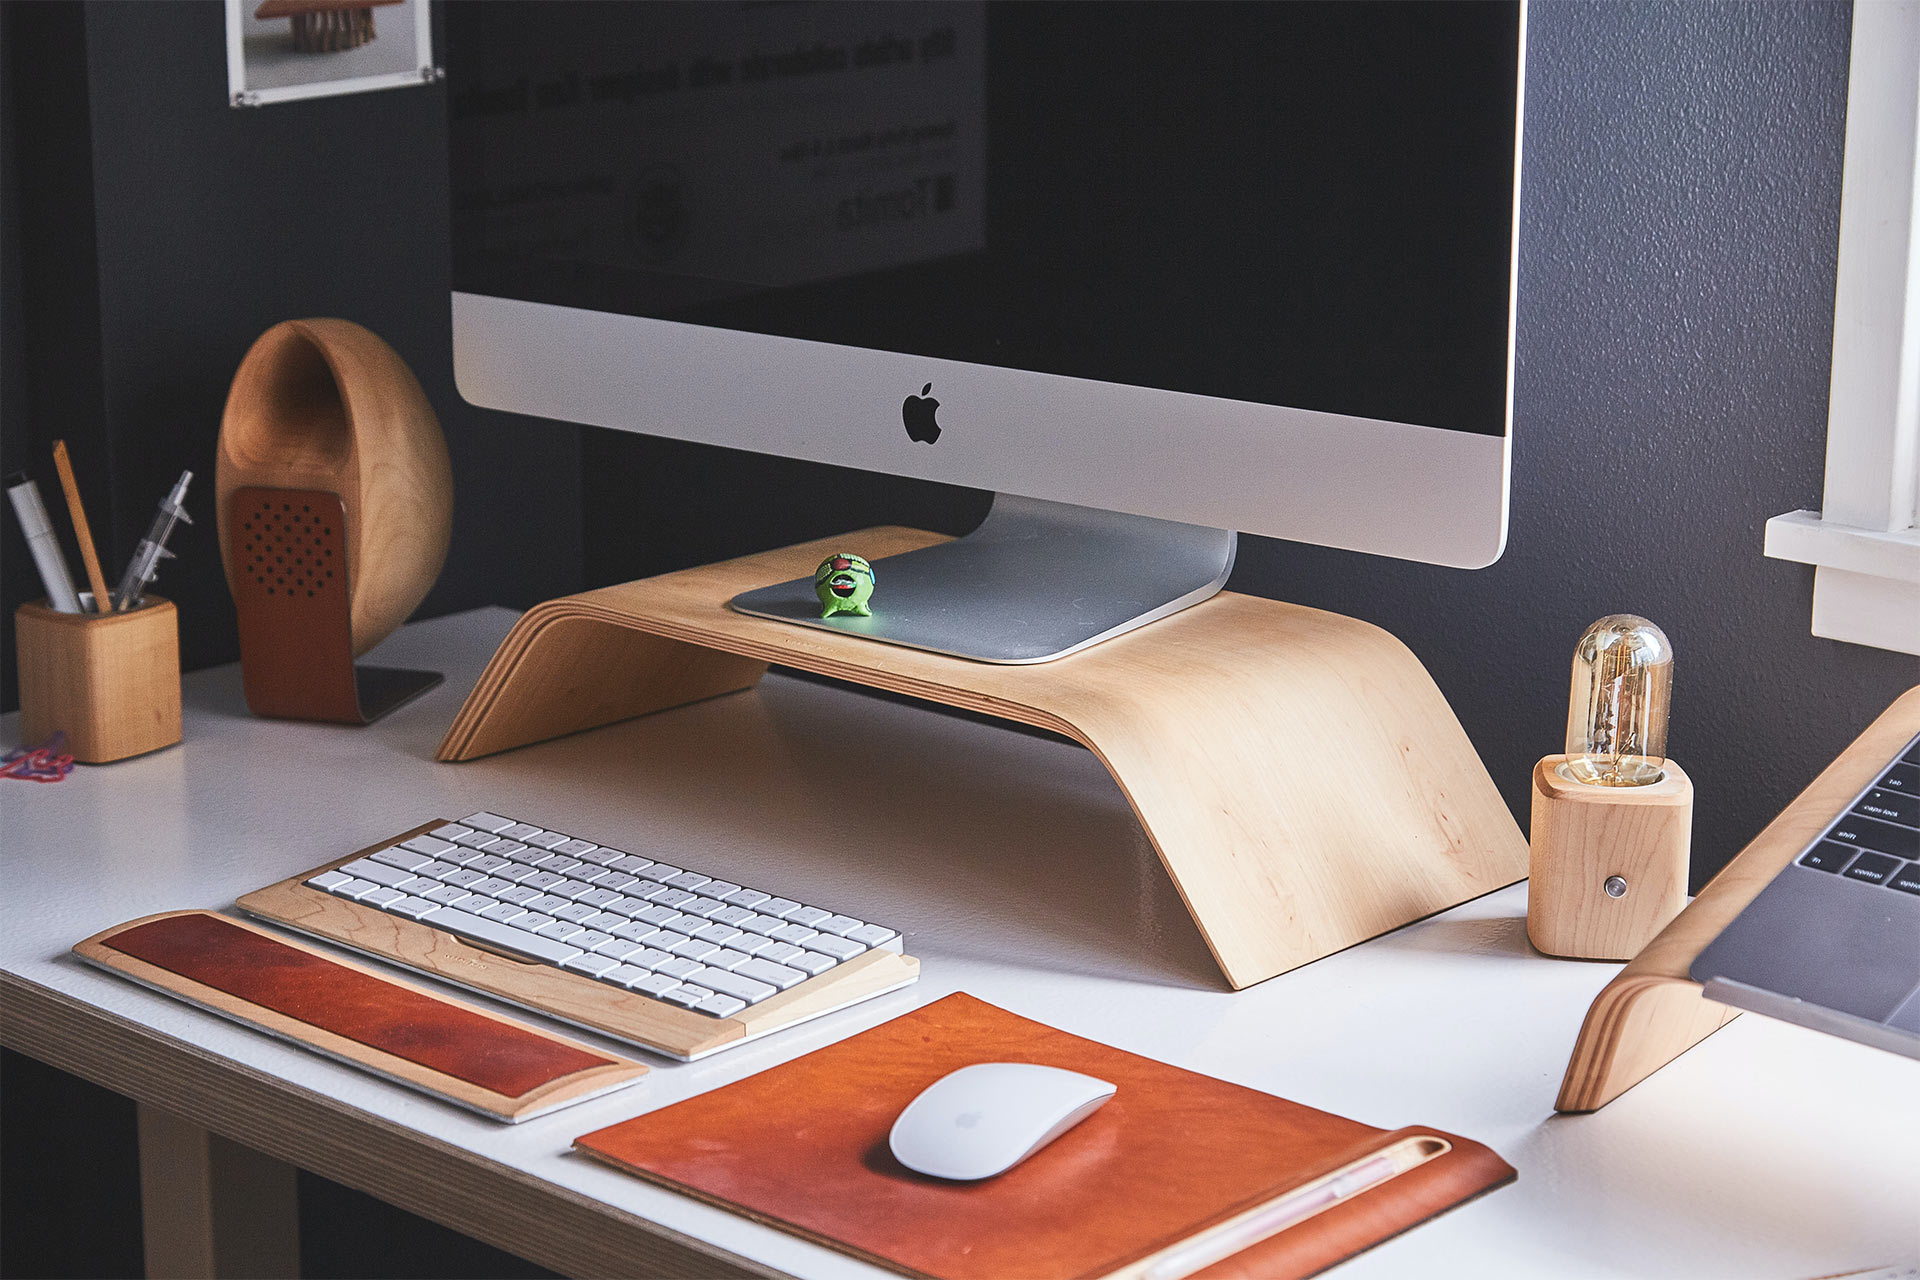 iMac na drewnianej podstawce na biurku, na którym leży bezprzewodowa klawiatura i mysz.